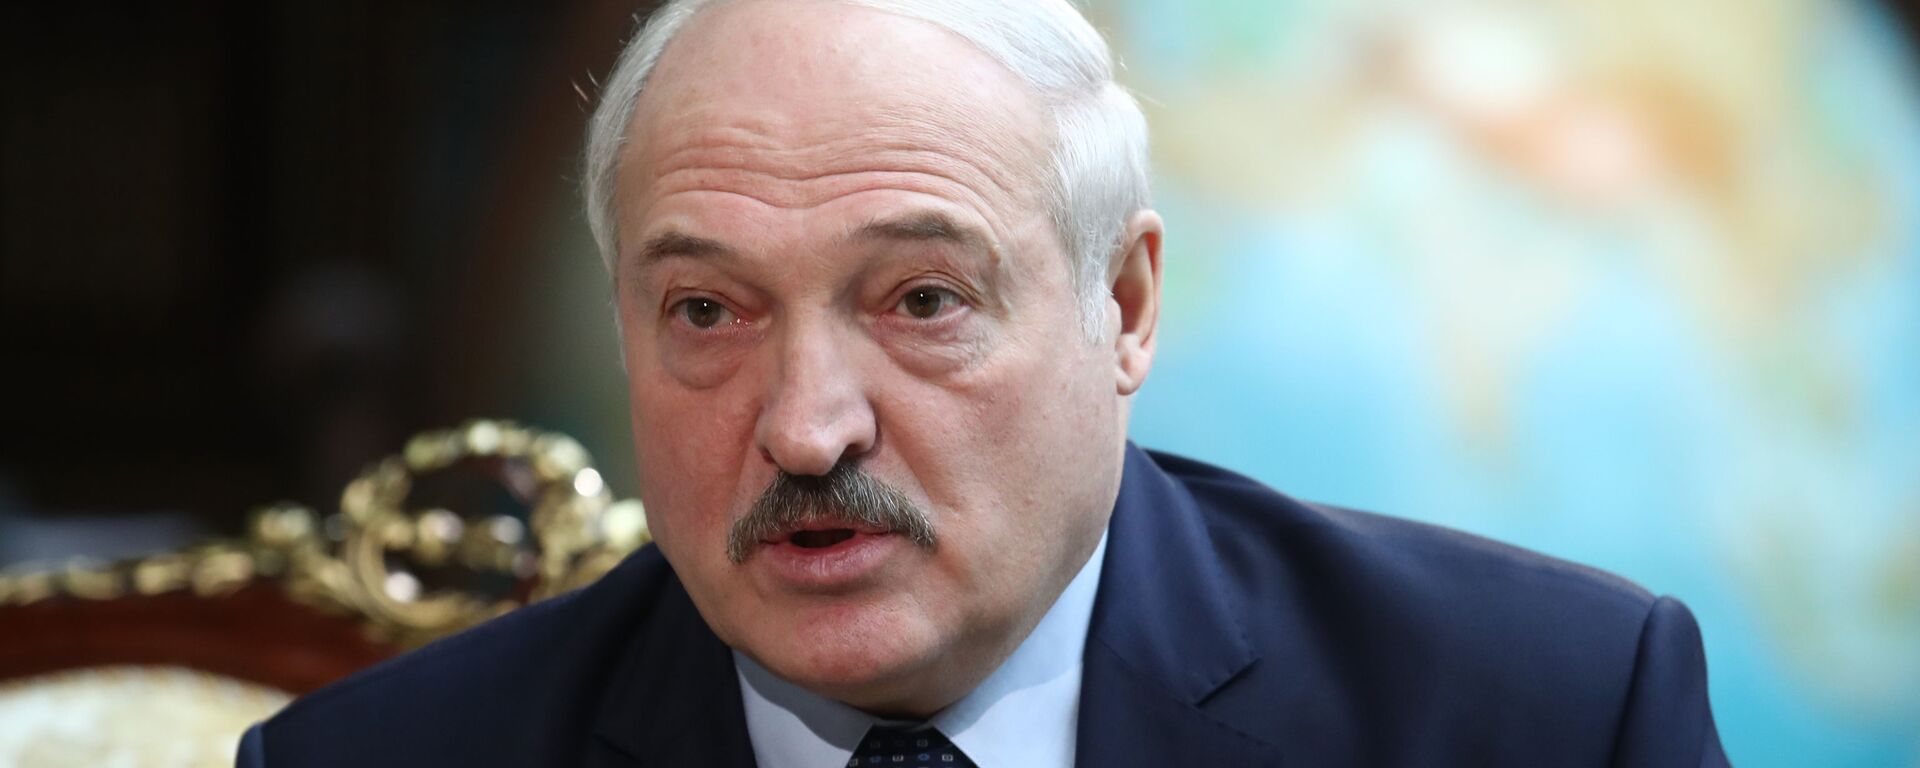 Alexandr Lukashenko, presidente de Bielorrusia  - Sputnik Mundo, 1920, 15.11.2021